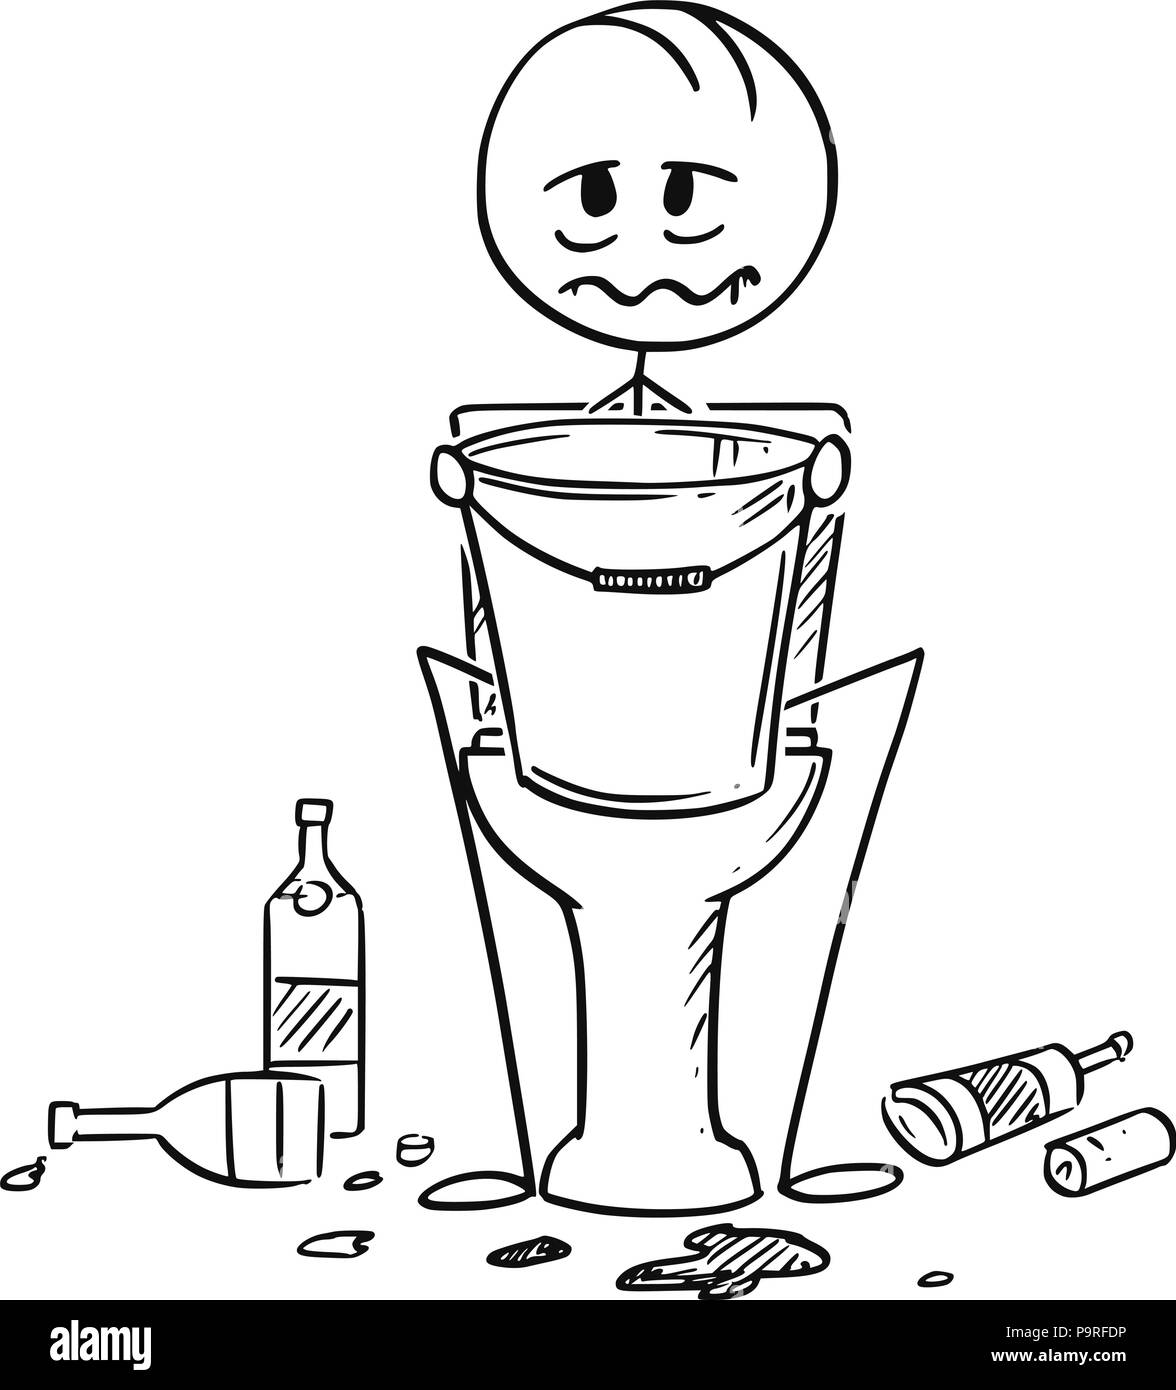 Caricature de l'homme ivre ou malade assis sur les toilettes avec godet en mains Illustration de Vecteur